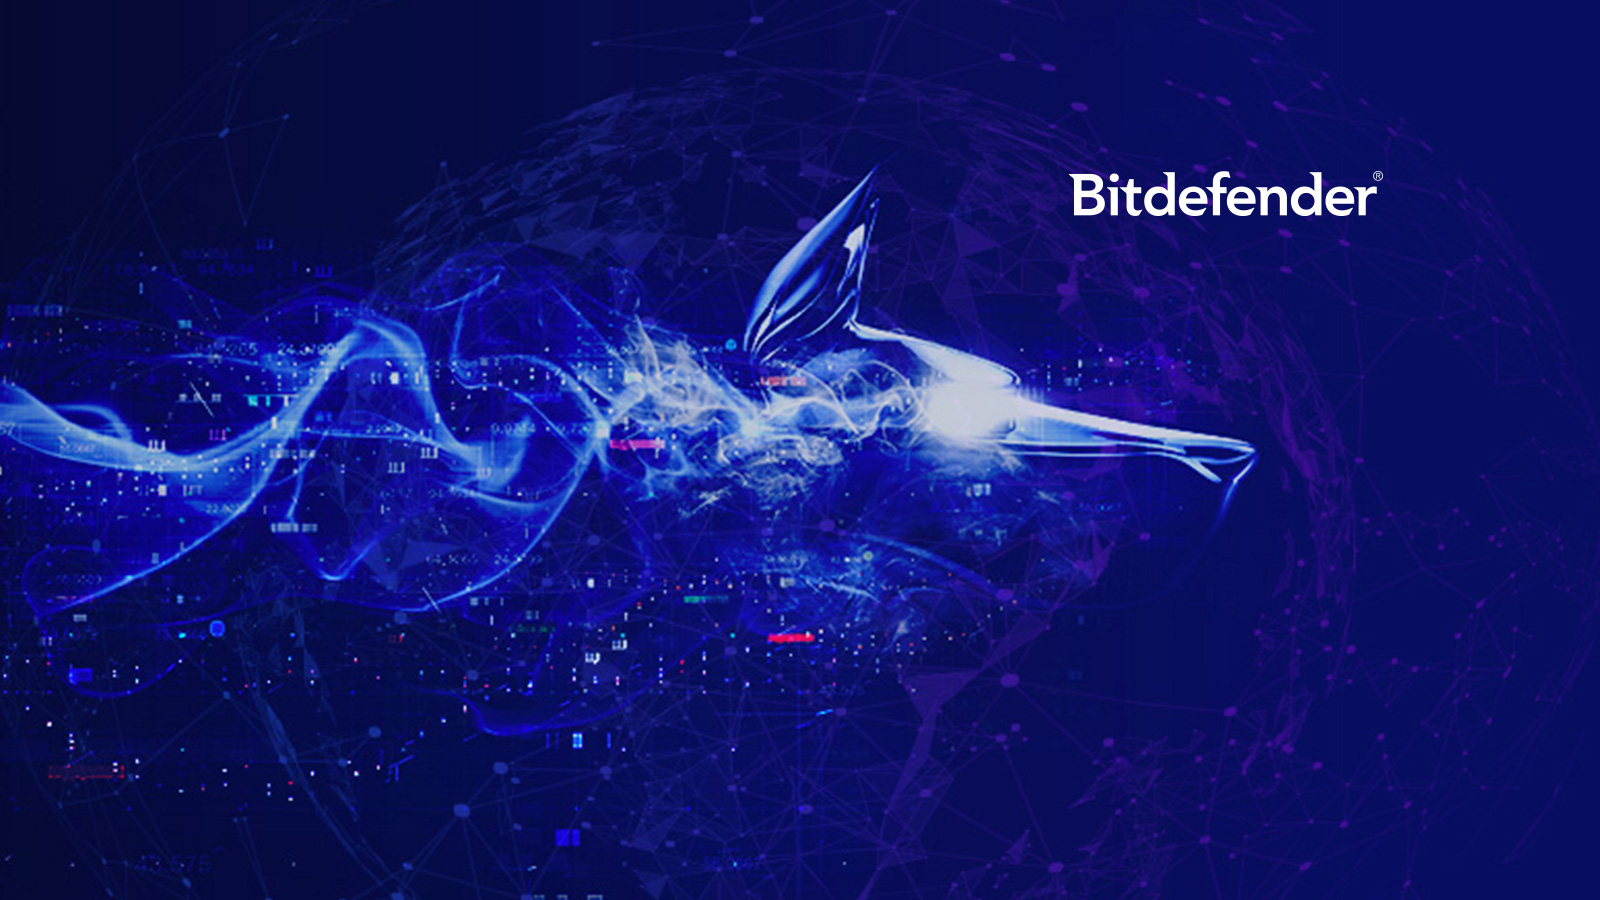 Buy Bitdefender antivirus & protect yourself again